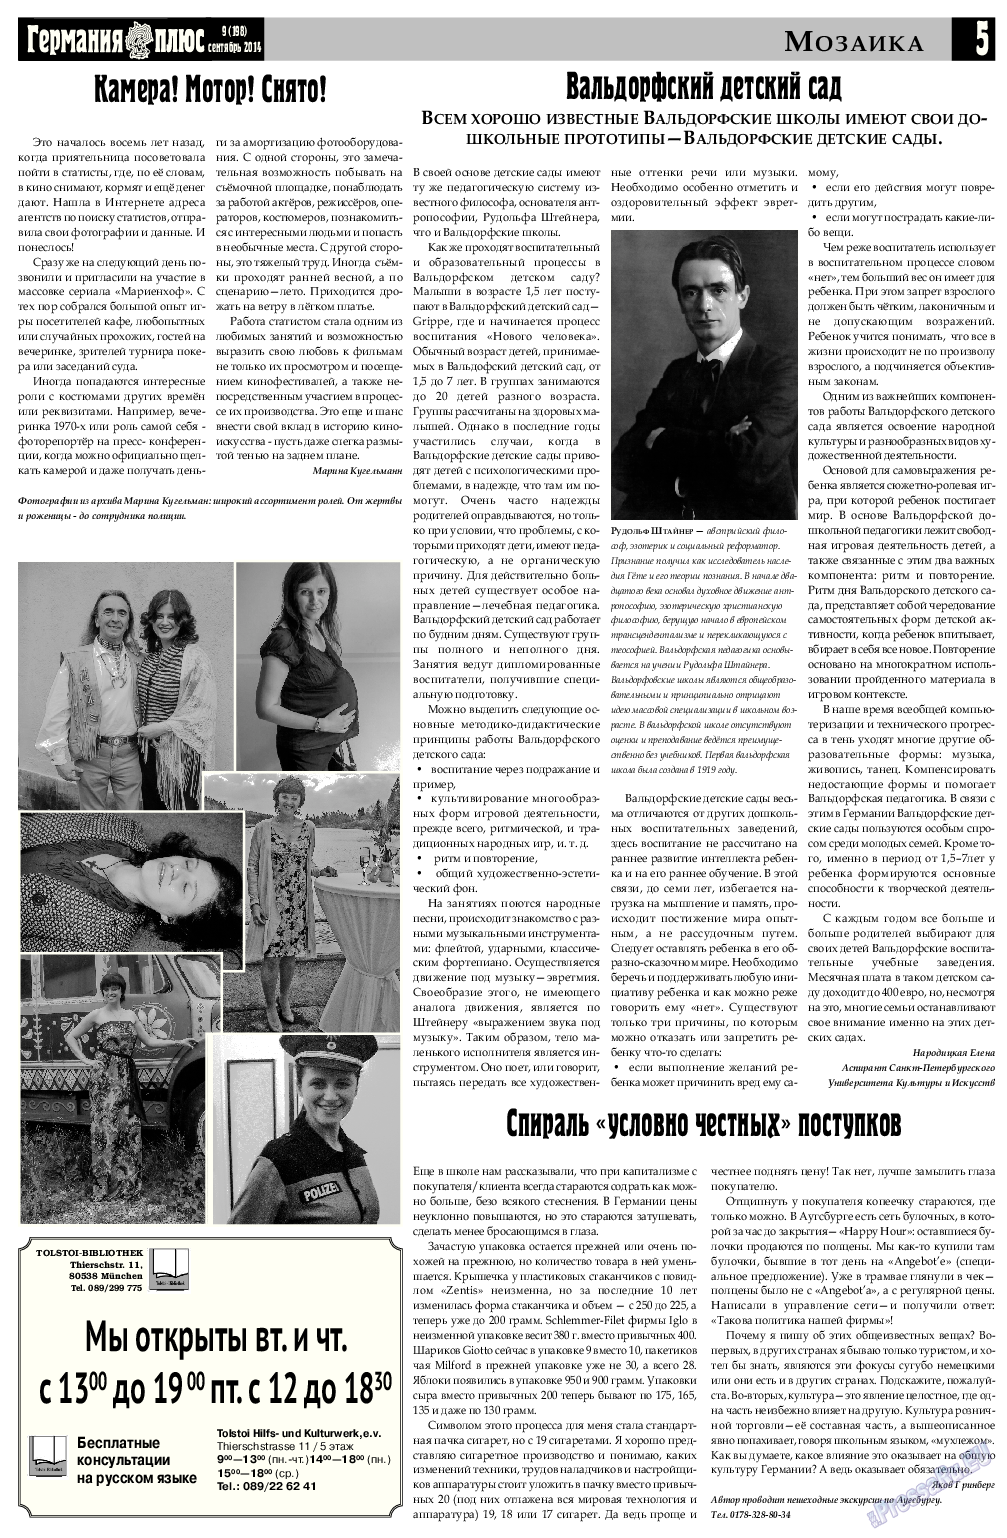 Германия плюс, газета. 2014 №8 стр.5